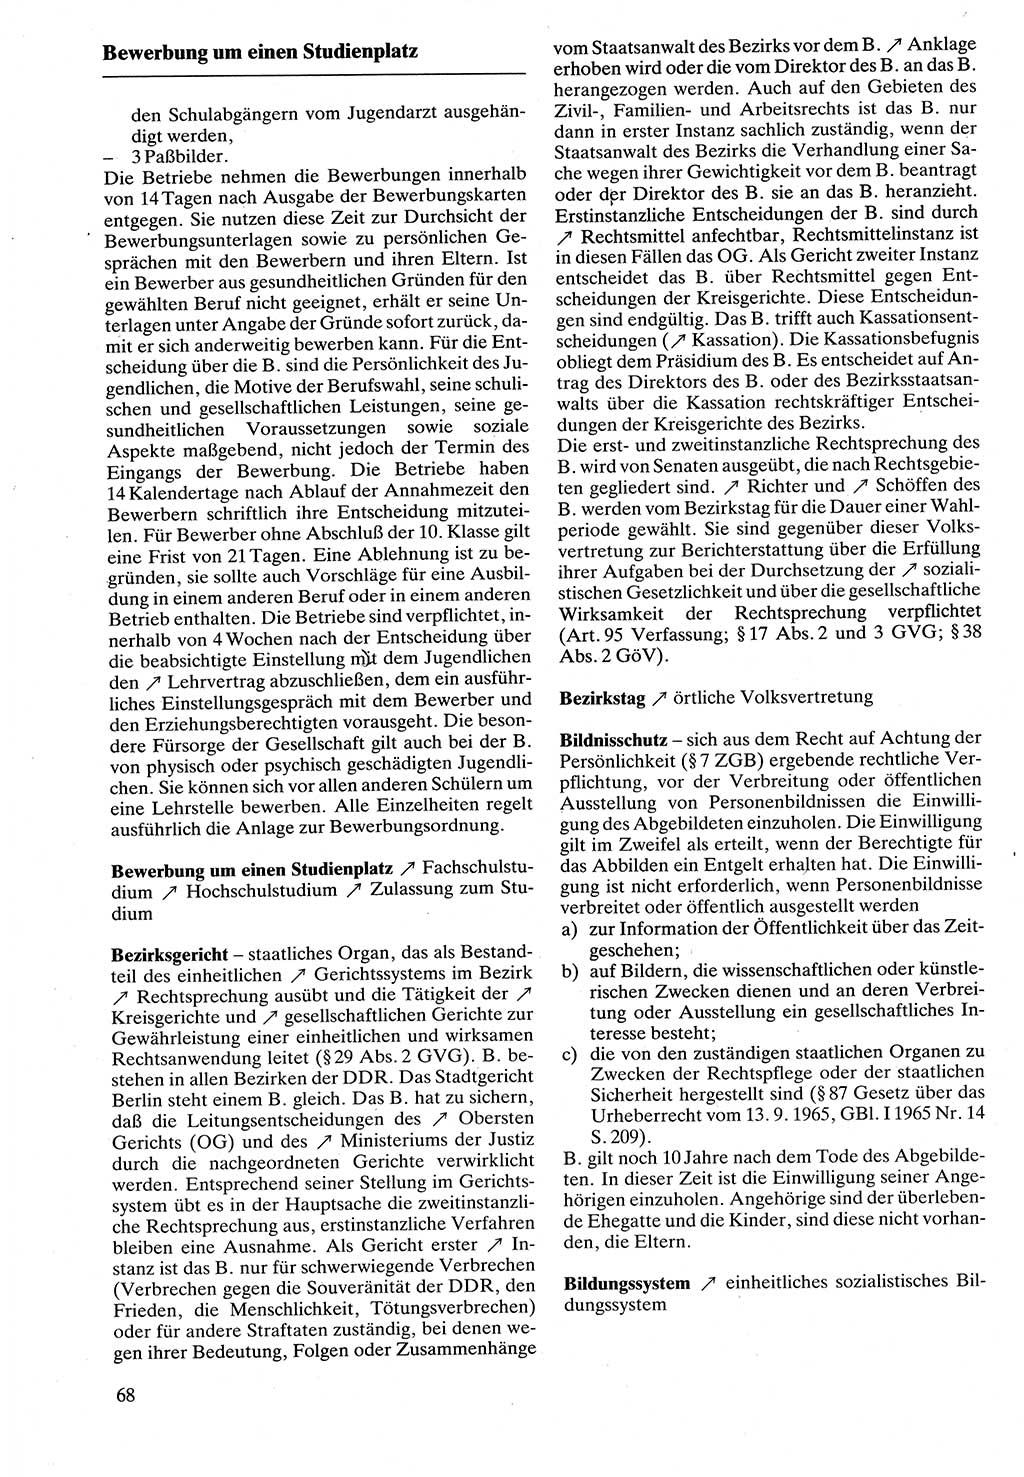 Rechtslexikon [Deutsche Demokratische Republik (DDR)] 1988, Seite 68 (Rechtslex. DDR 1988, S. 68)